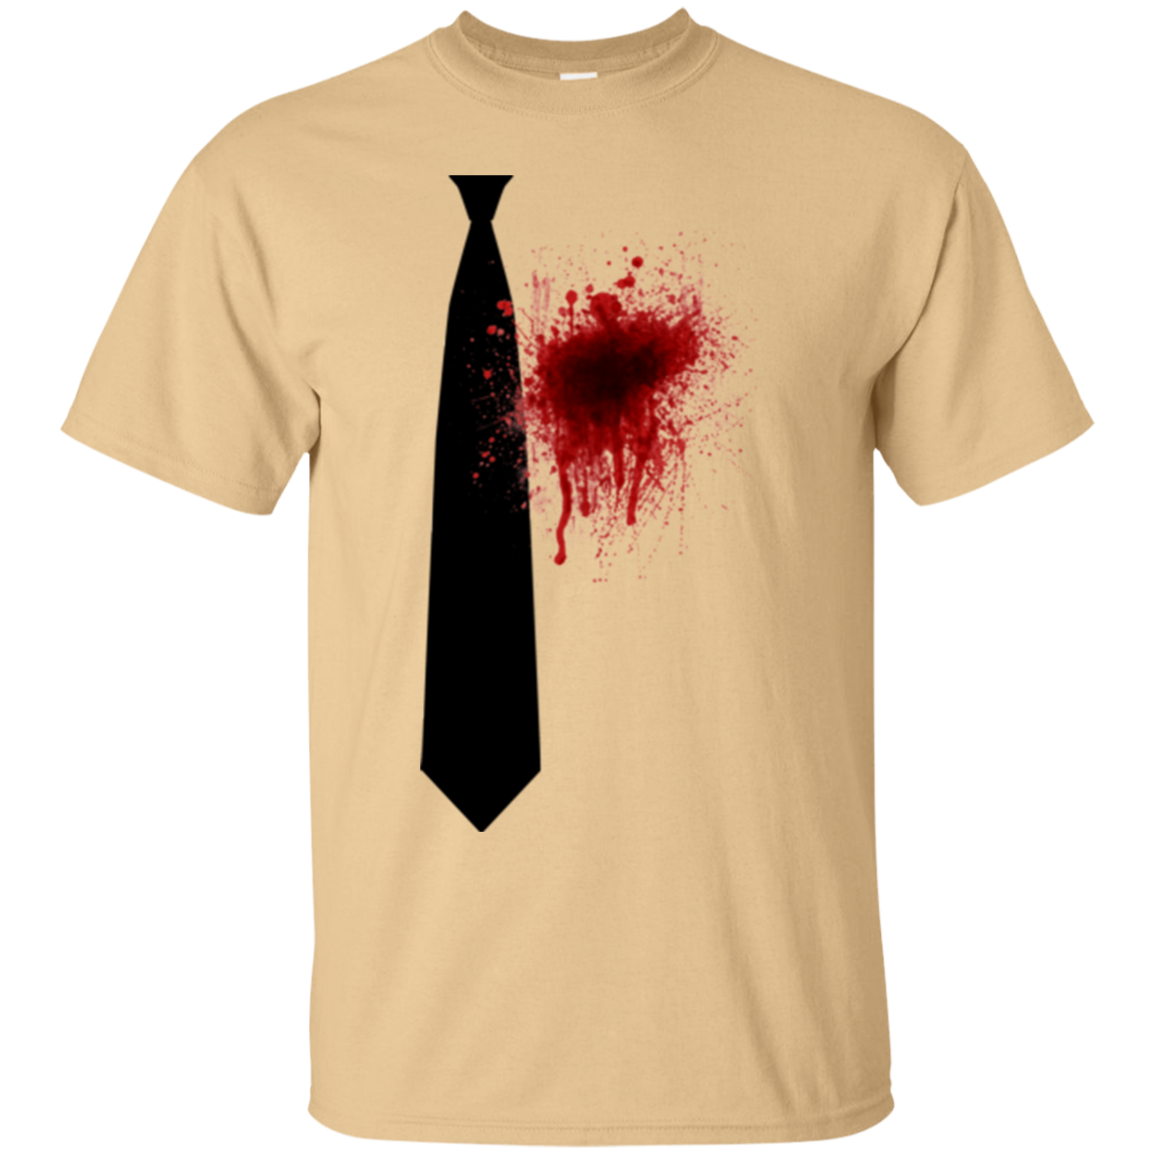 Butcher tie T-Shirt